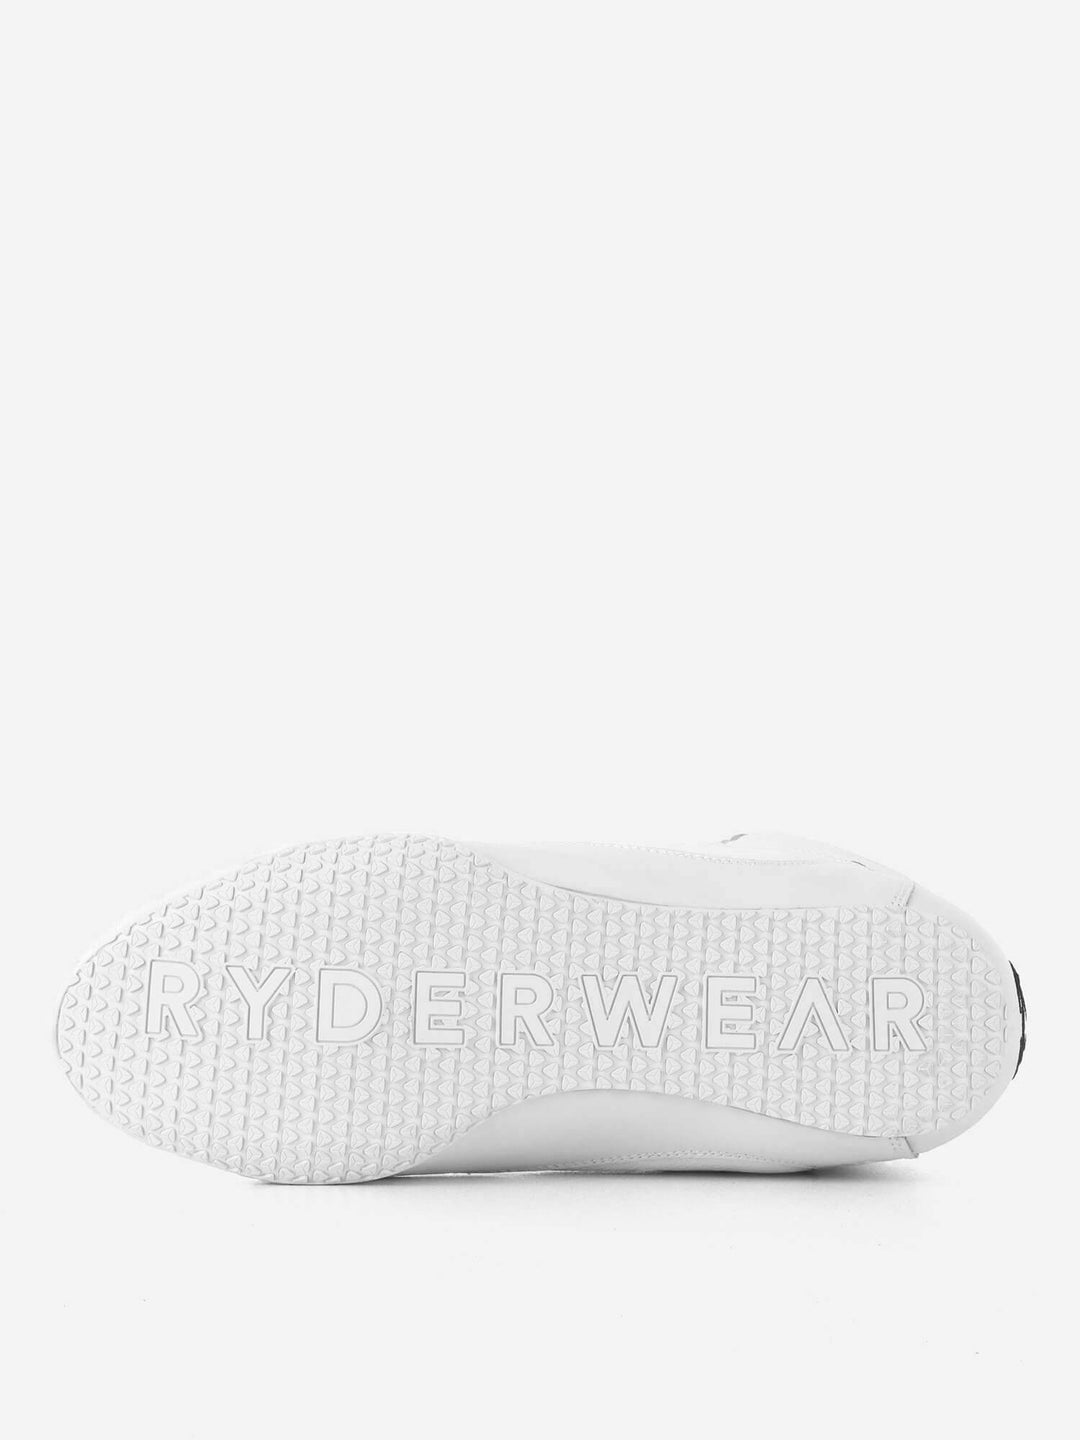 Zapatillas Halterofilia Ryderwear España - D-Mak Block Hombre Blancas